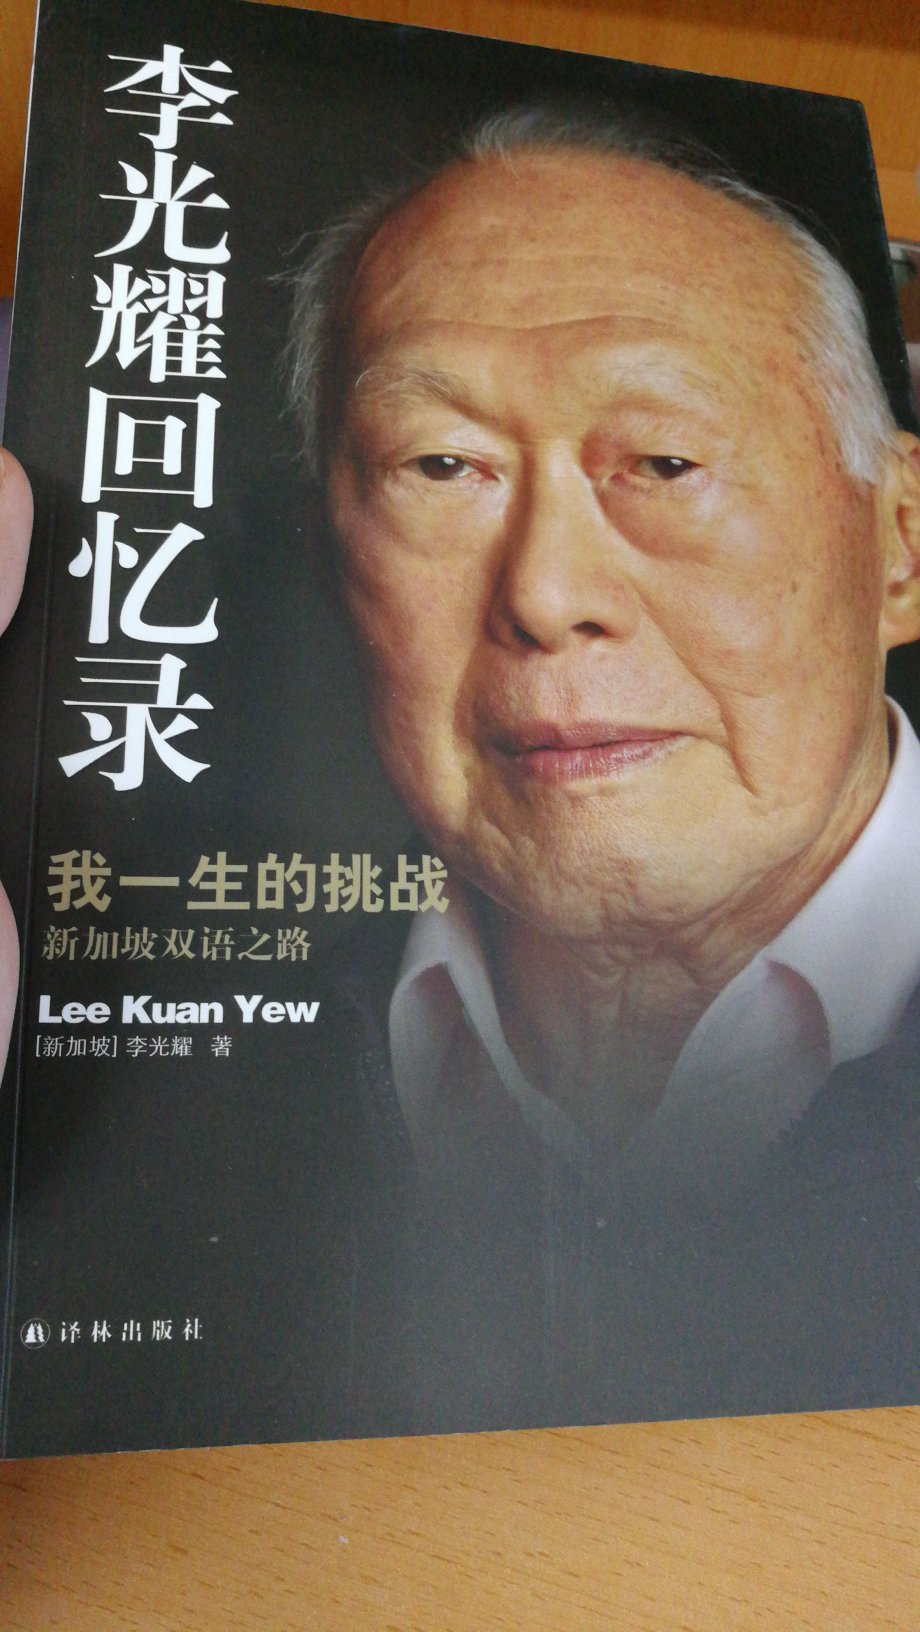 冲着李光耀先生买的这本书，还没开始看，不过书的质量很不错